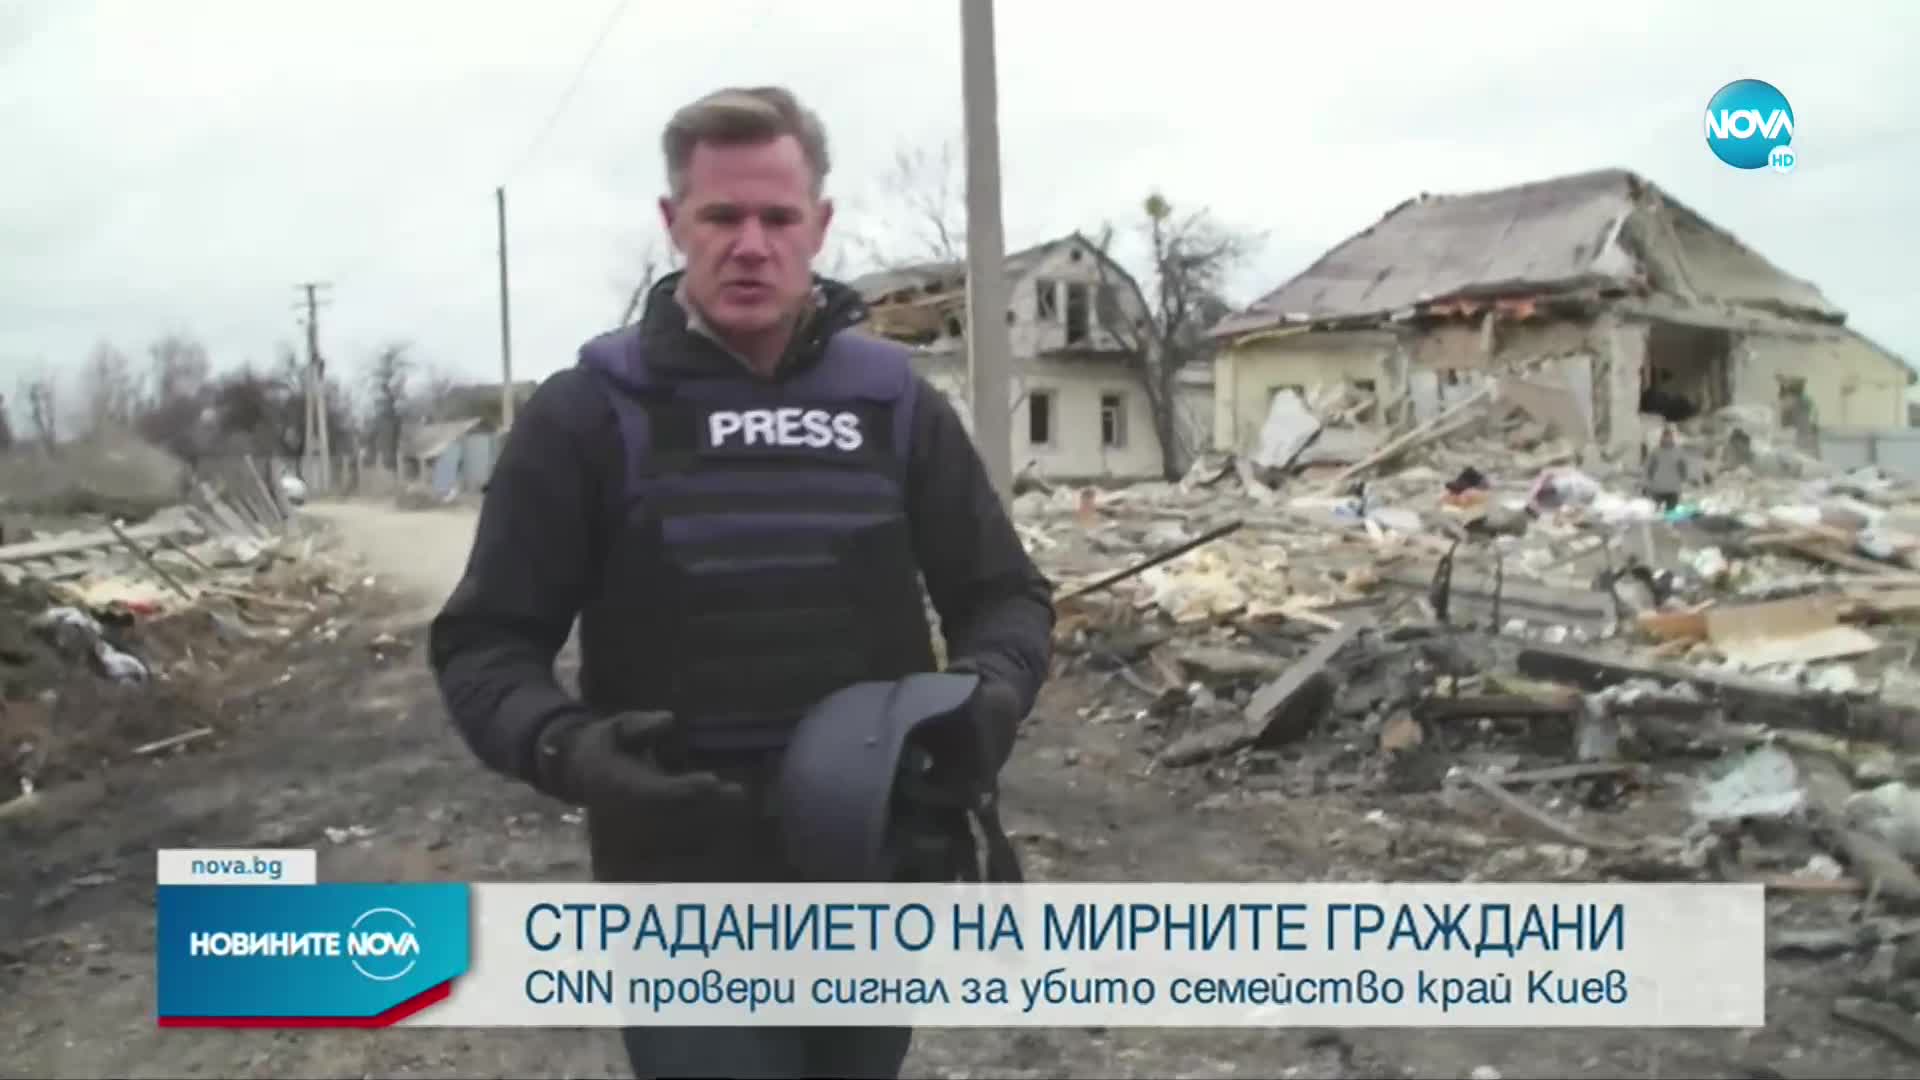 Разказ на CNN по сигнал за убито семейство край Киев